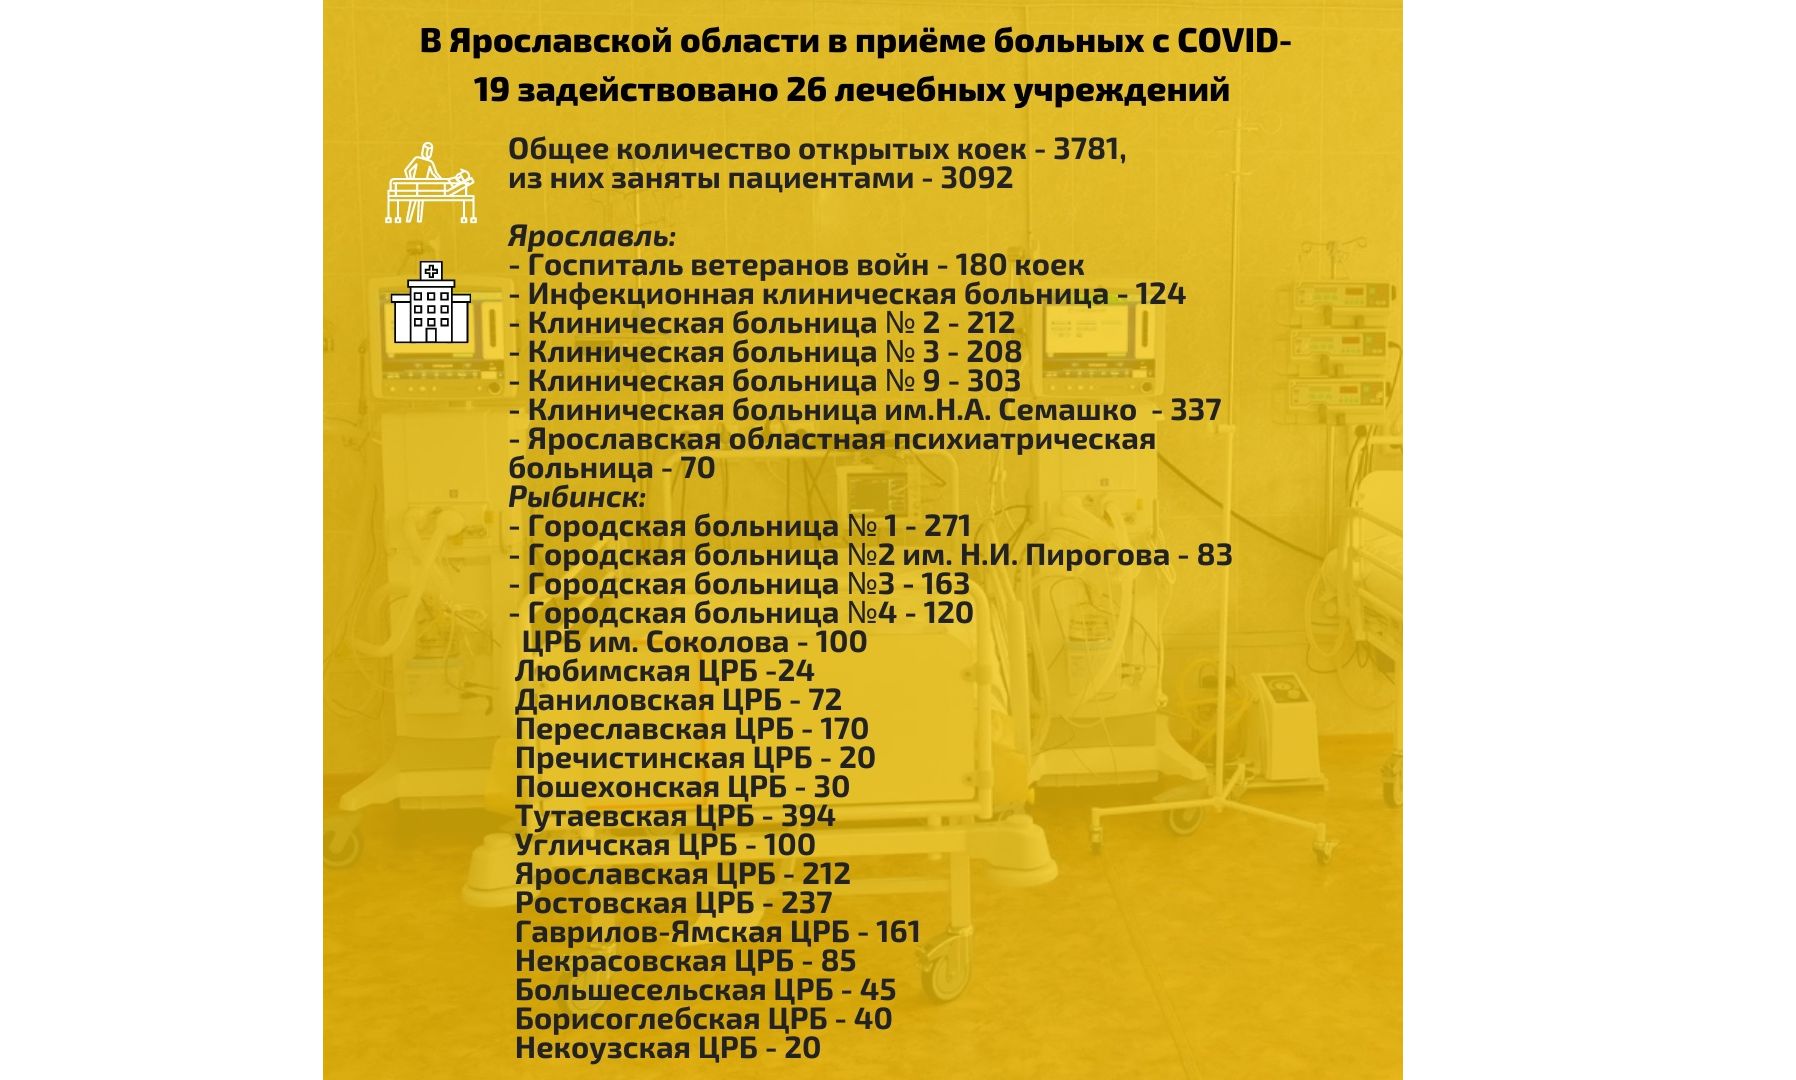 В Ярославской области за неделю развернули более 200 новых коек для пациентов с ковидом